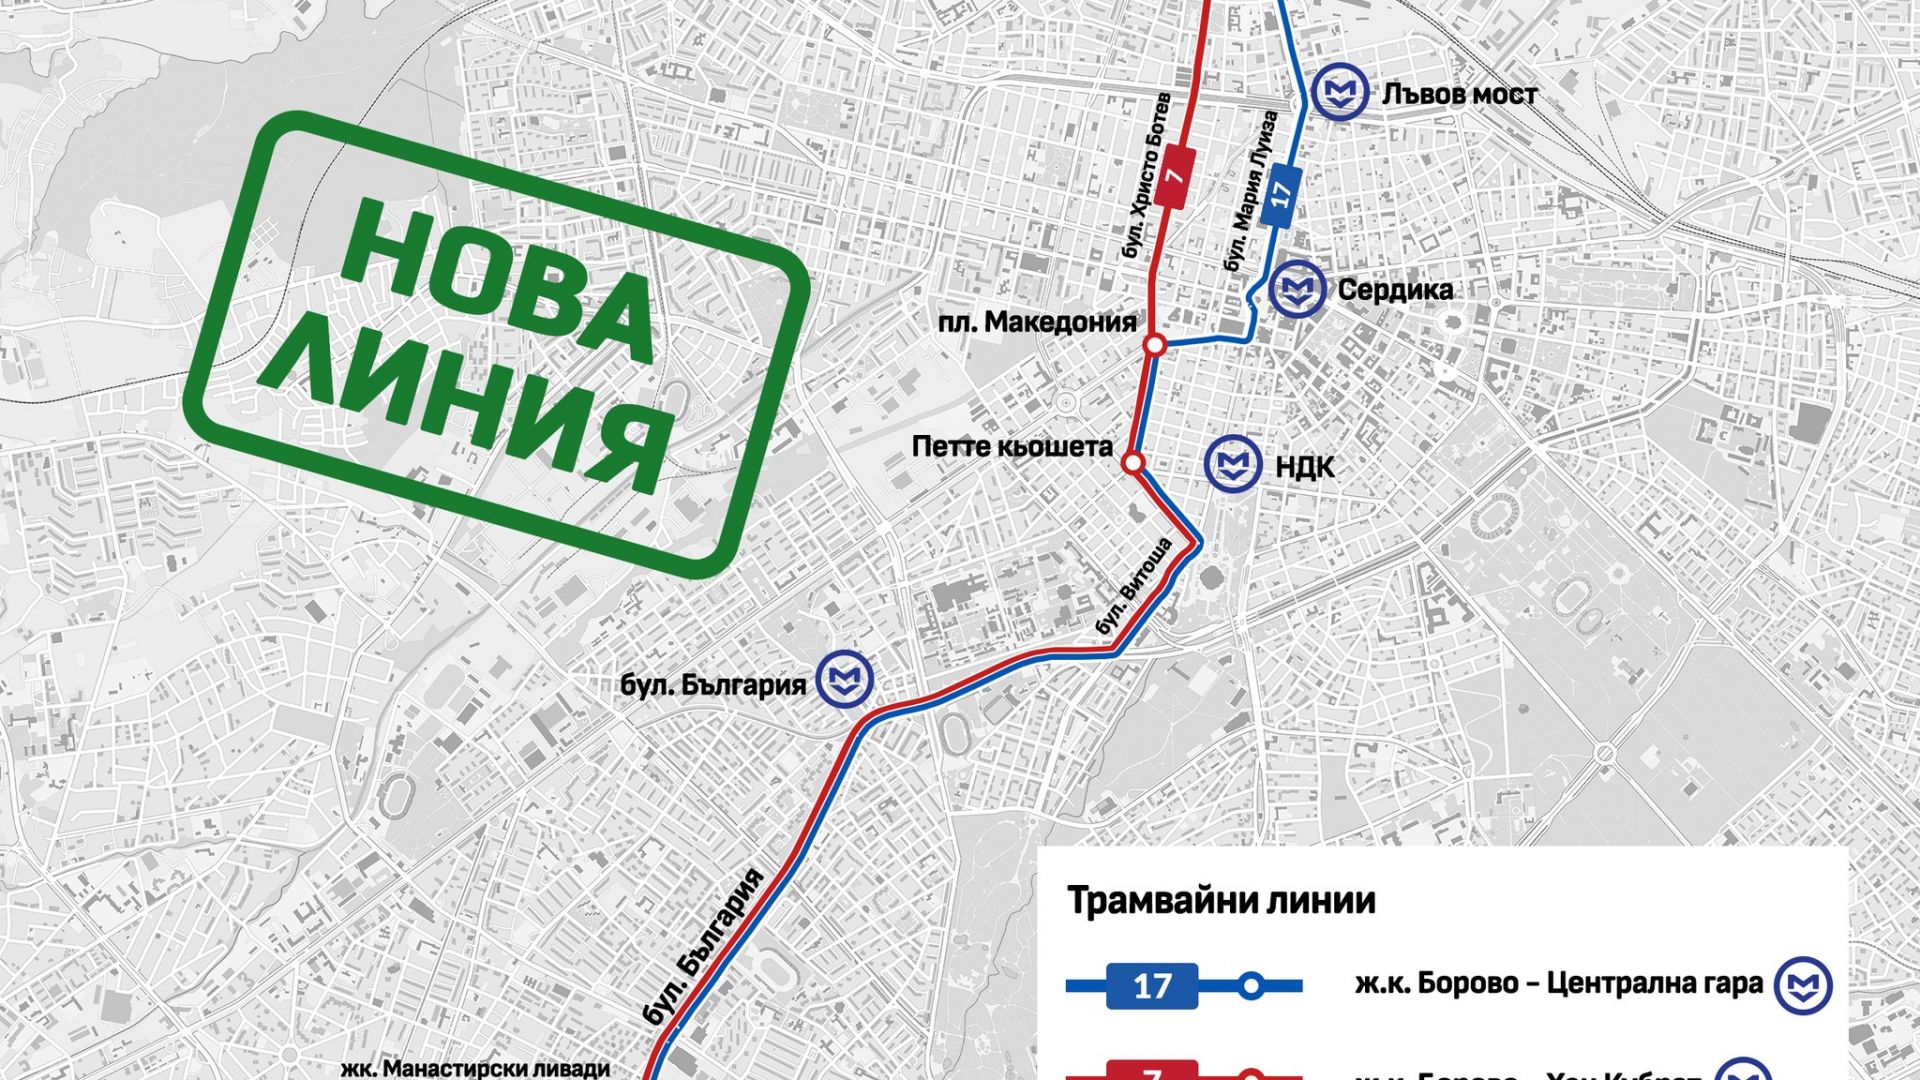 Предлагат нова трамвайна линия по бул." България", която да минава през Лъвов мост